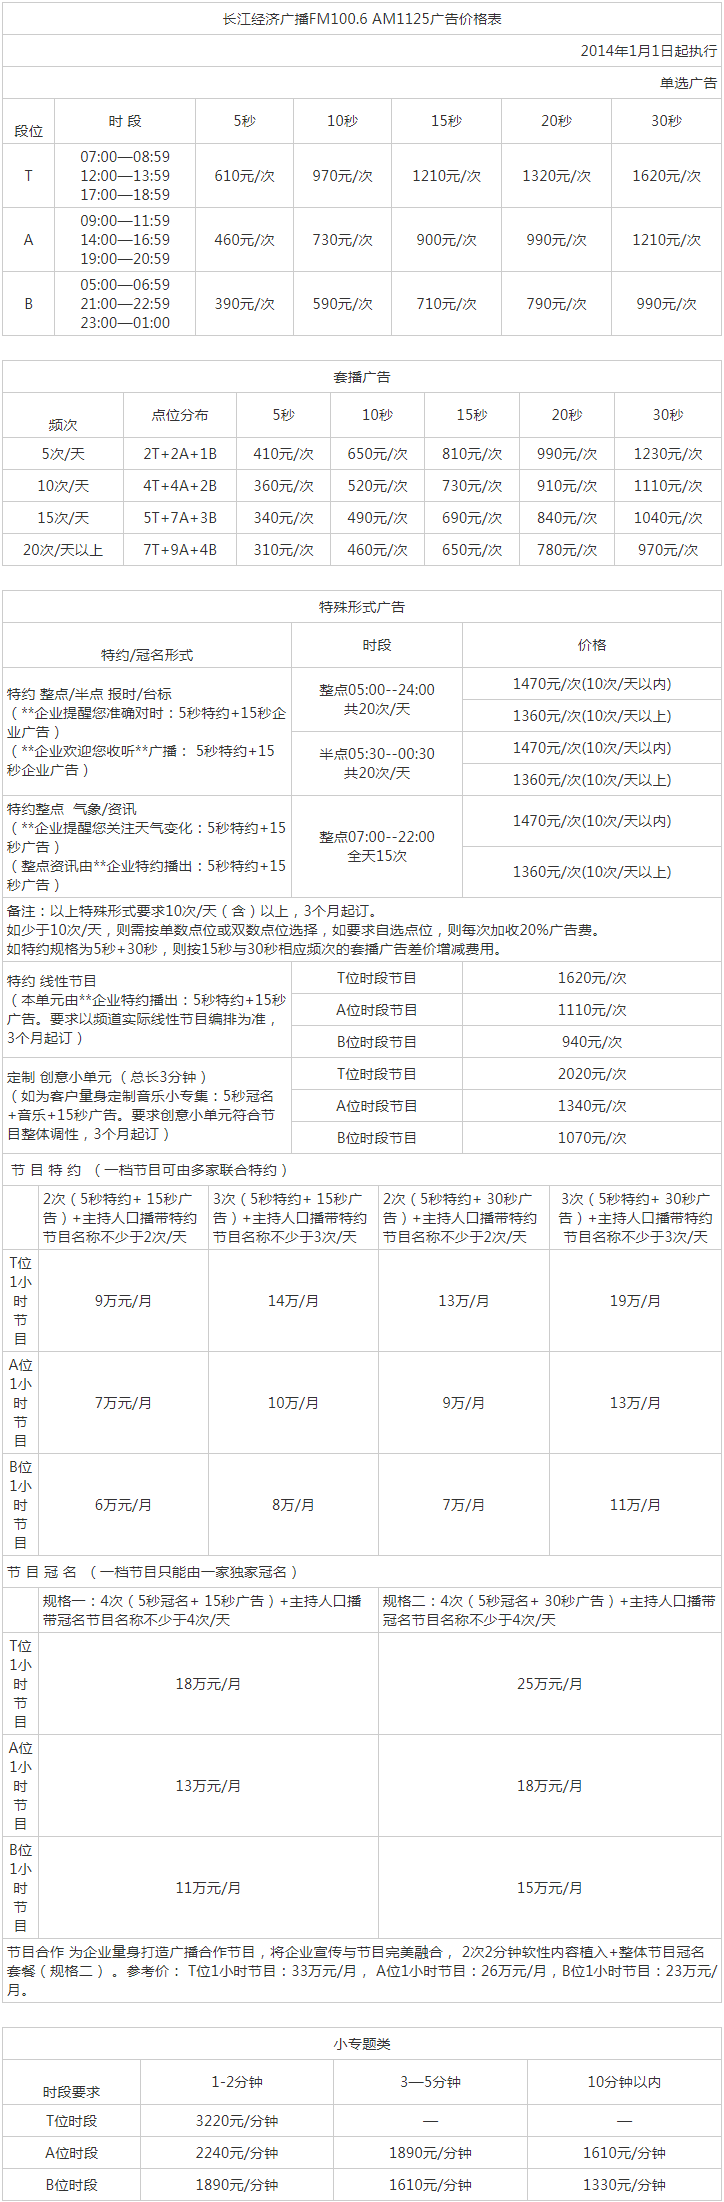 2013武汉人民广播电台长江经济频道FM100.6 AM1125广告报价表.png